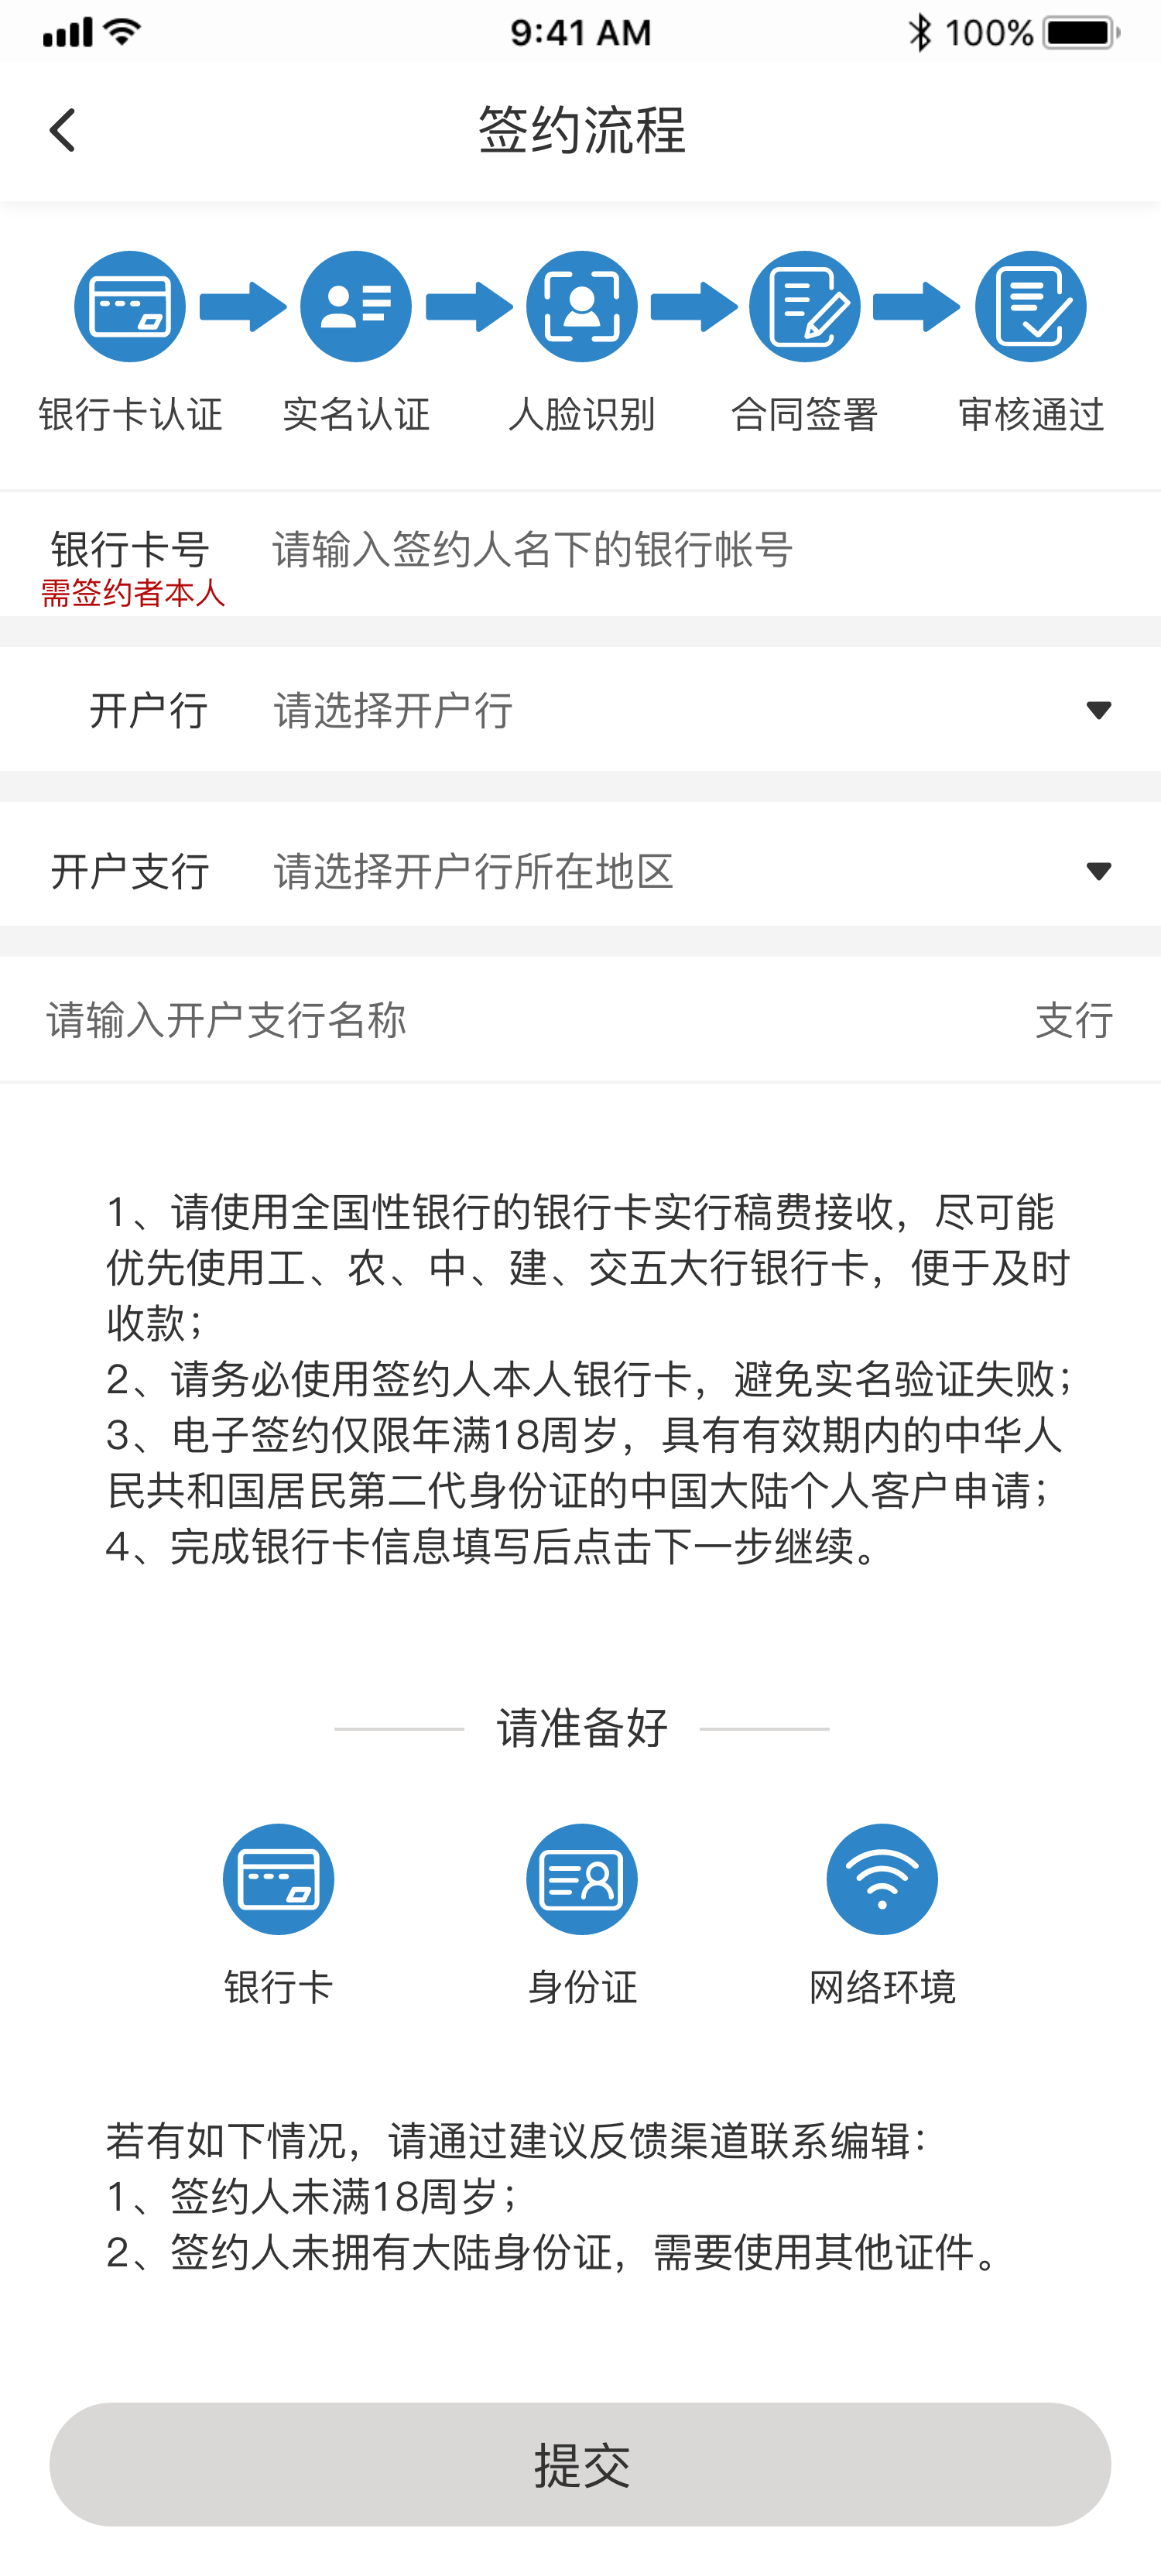 息壤中文网在线电子签约功能正式上线啦! 